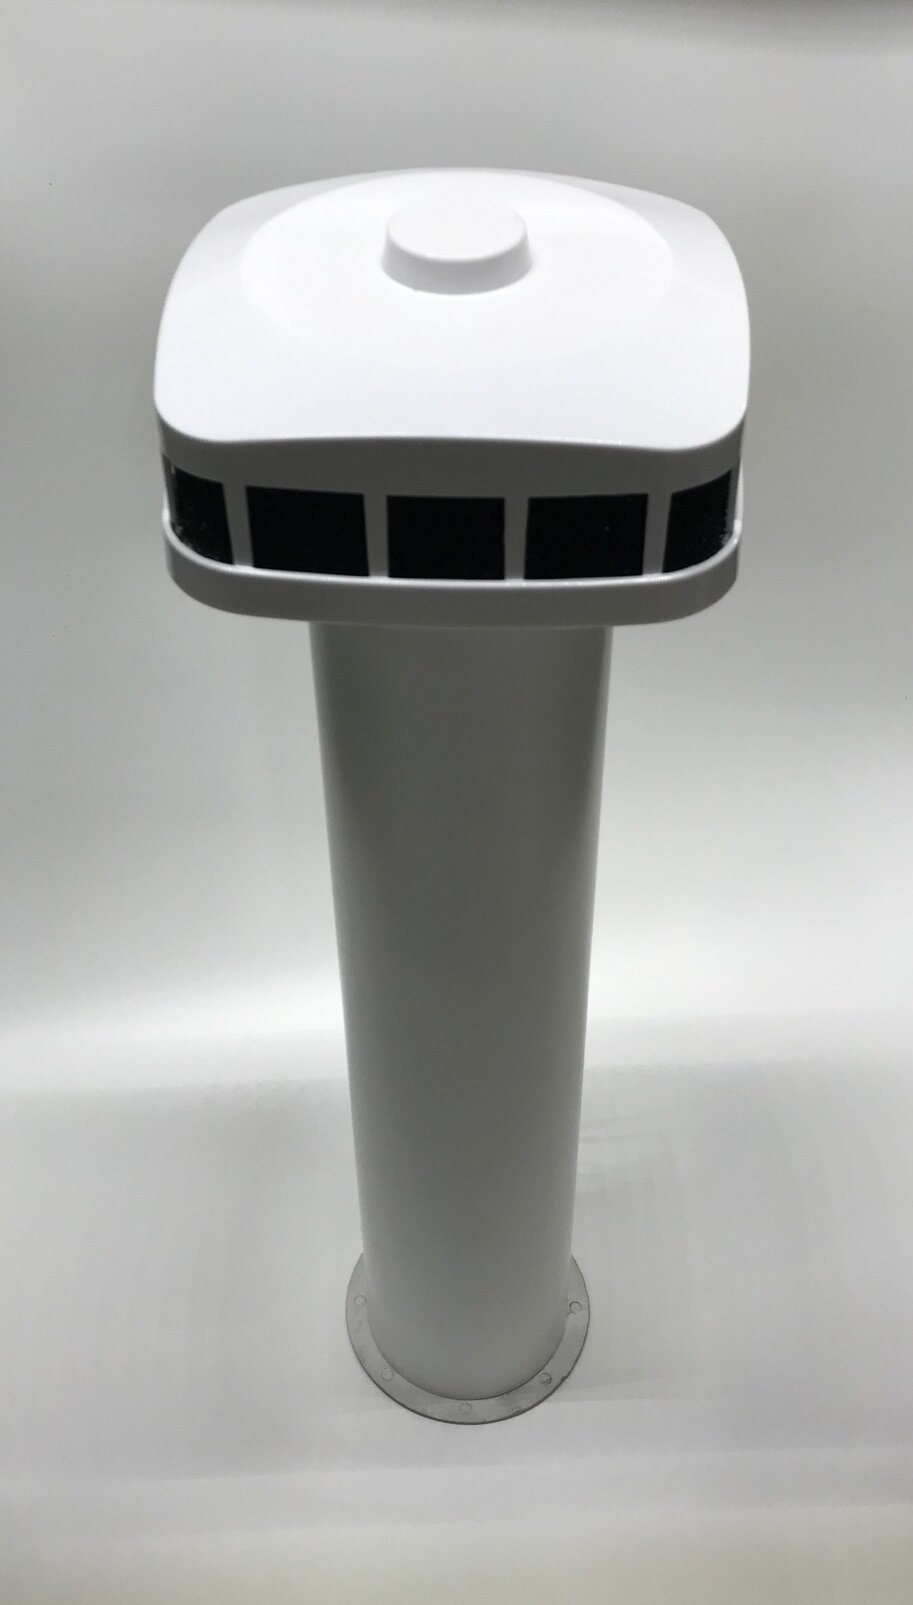 Клапан Инфильтрации Воздуха Airone КИВ-К 100 0.5м с выходом стенным из нержавеющей стали